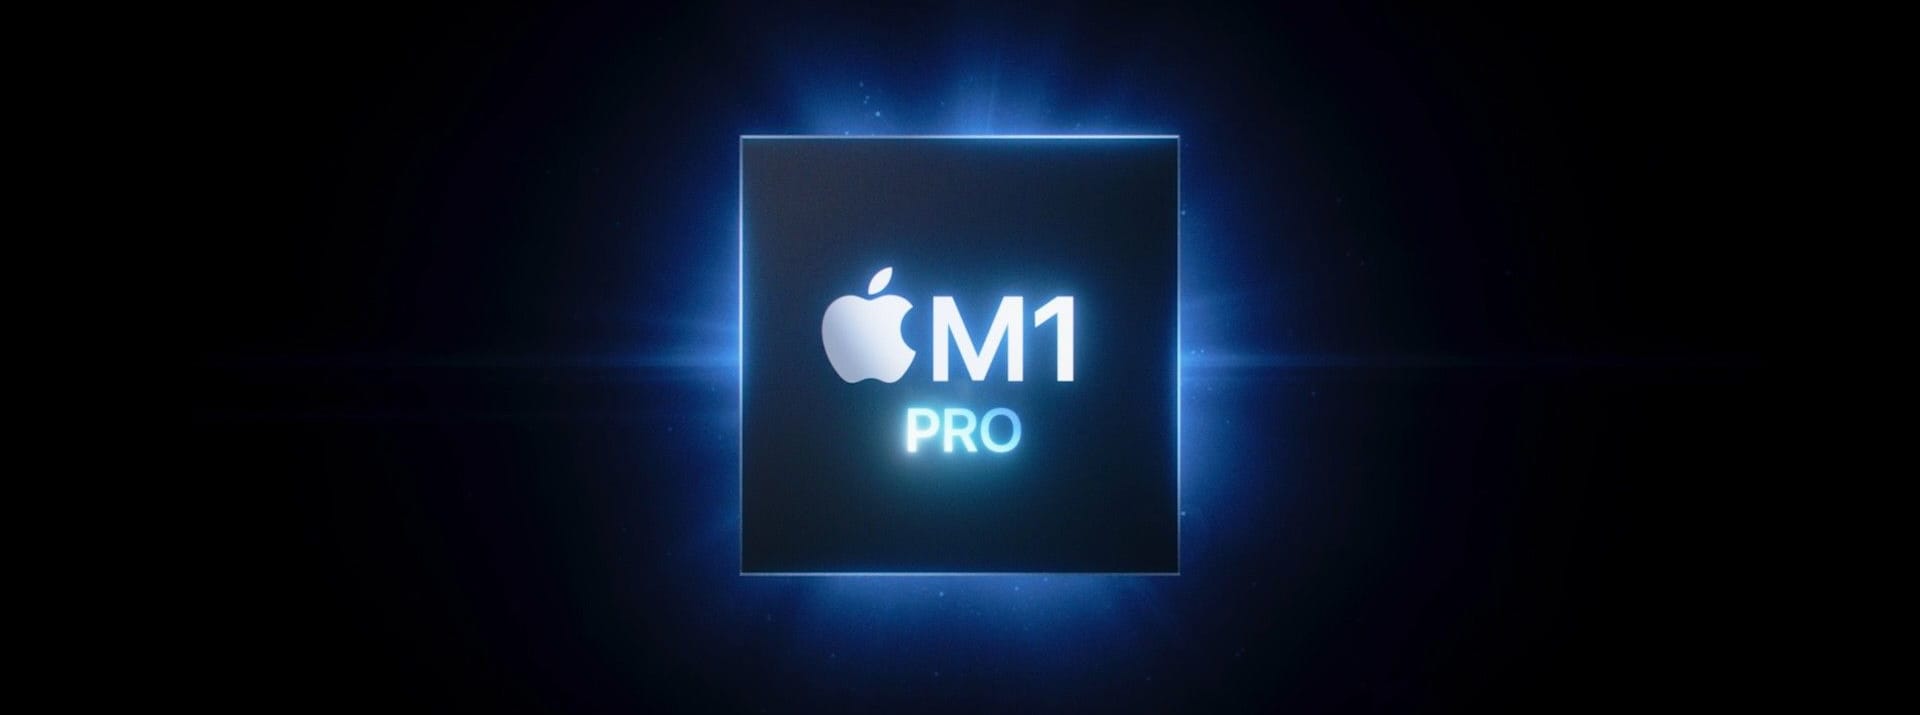 Der M1 Pro ist als Standard in den neuen MacBook Pros verbaut. Er ist ebenfalls neu entwickelt und besitzt 10 CPU-Kerne und bis zu 16 Grafikkerne. Der neue Chip soll laut Apple 70 Prozent schneller sein als der M1, der im MacBook Air zum Einsatz kommt.